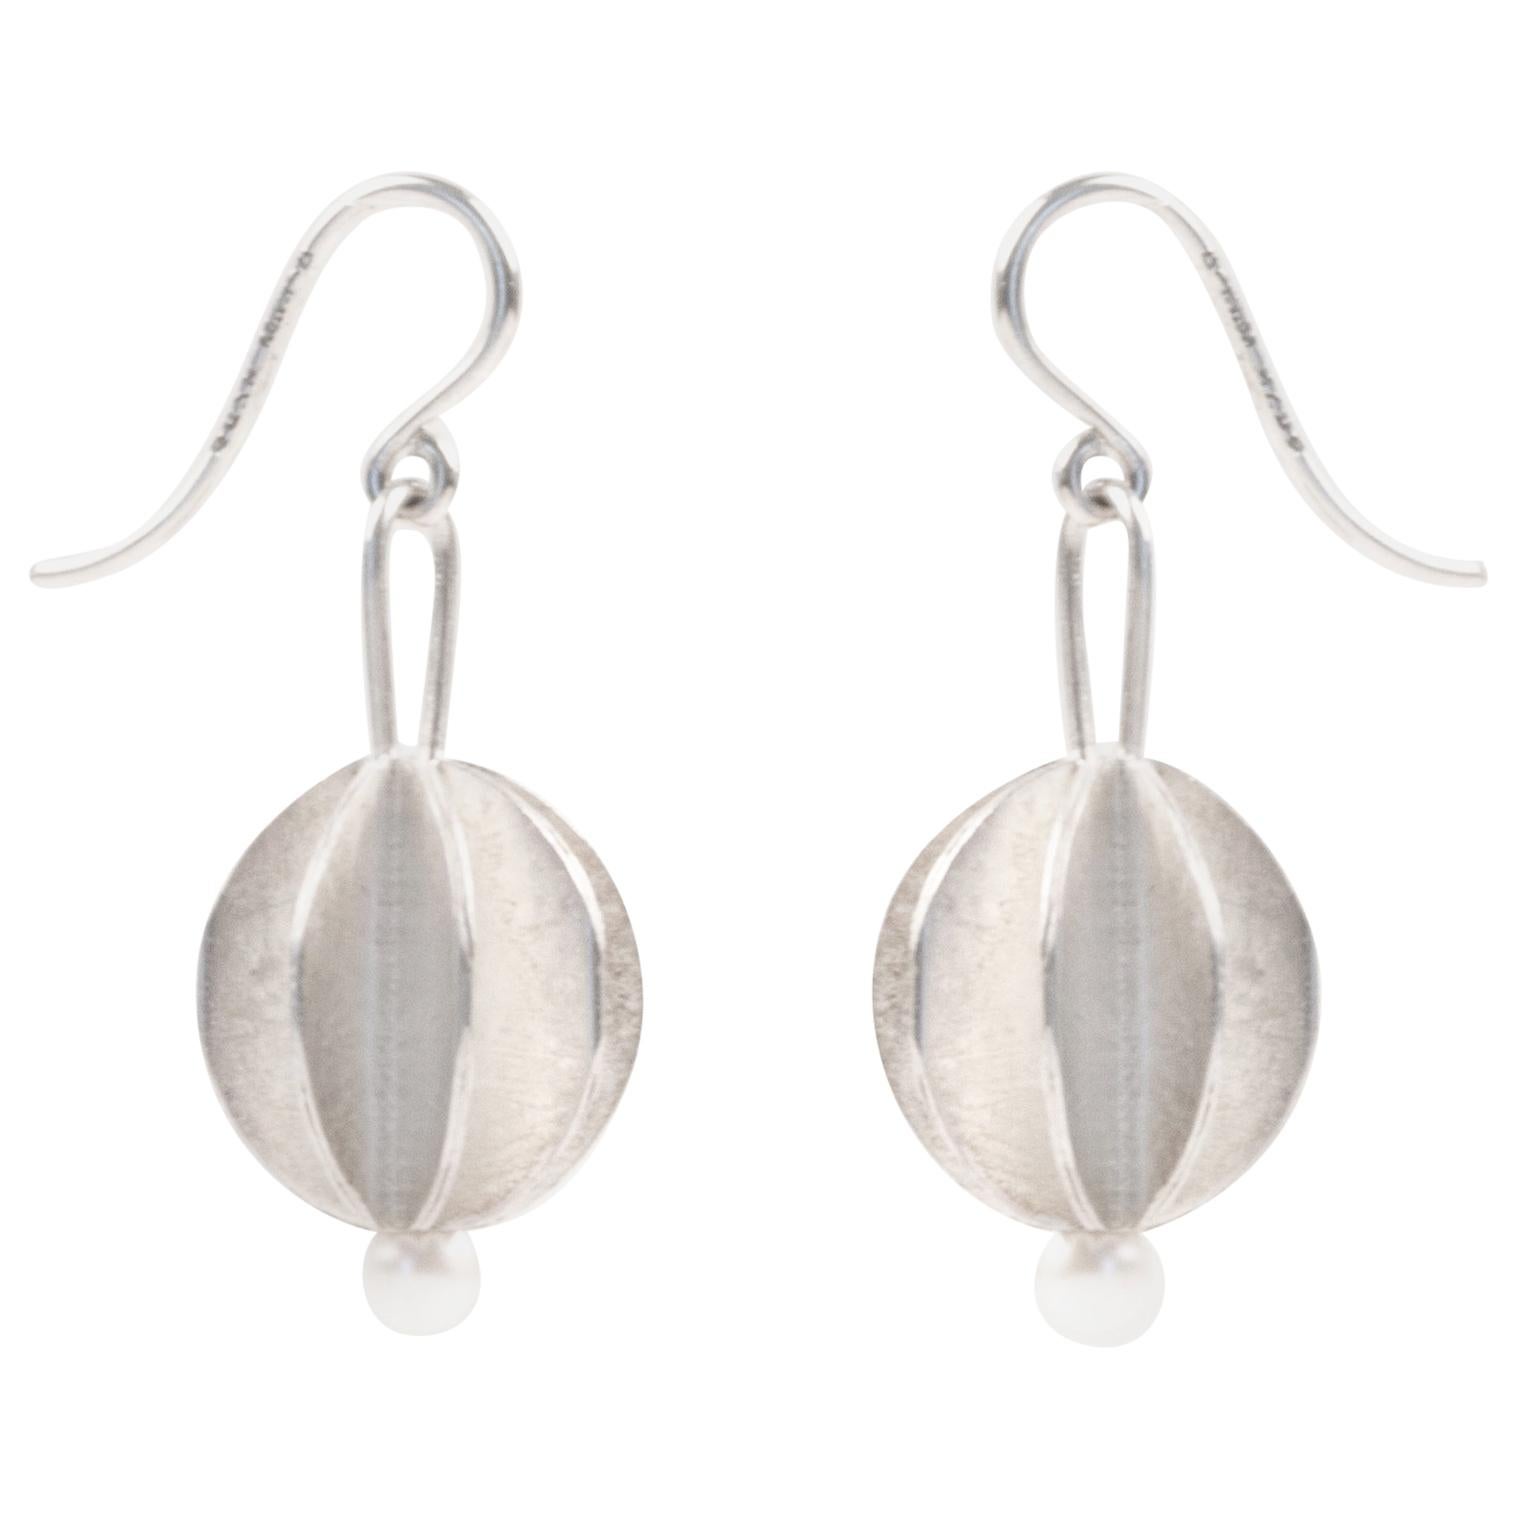 Scandinavian Silver and Pearl Drop Earrings by Åse-Marit Thorbjørnsrud For Sale